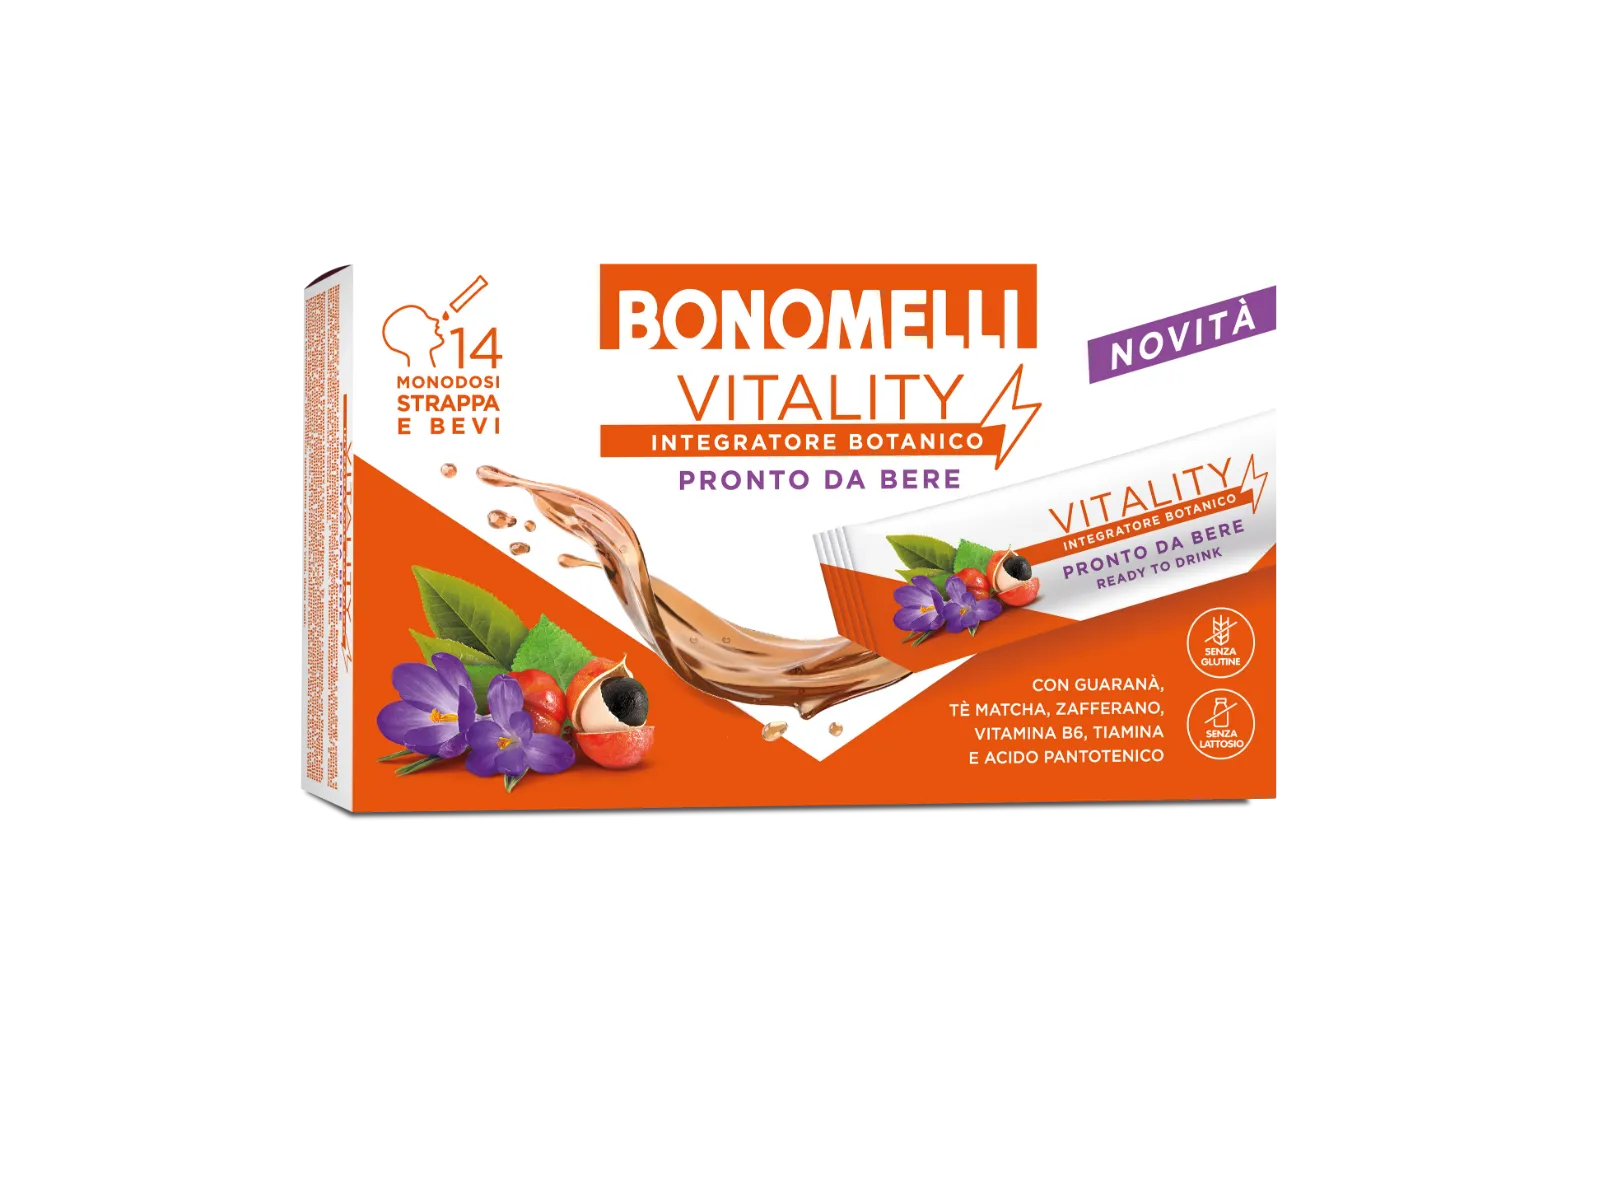 Integratore Botanico Bonomelli Vitality - 14 Stick - Con Buono Sconto Da 1€